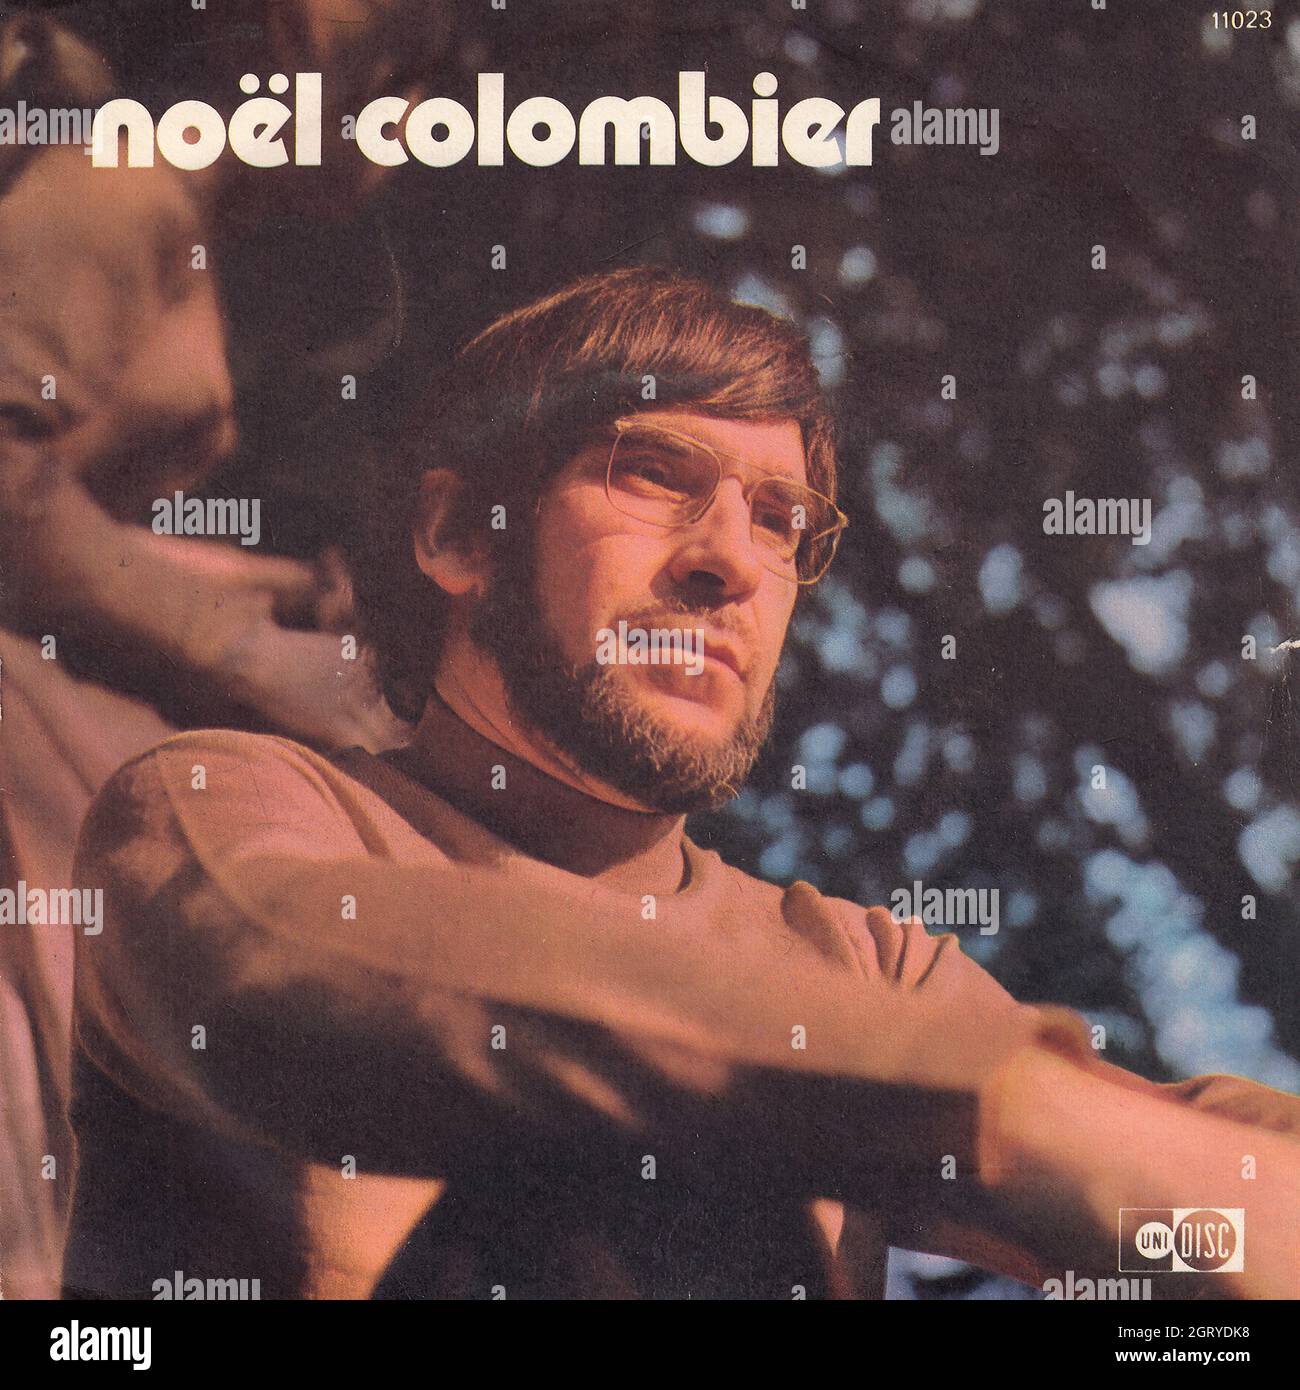 Noël Colombier - Périgord Pop - La chanson qui marche 45rpm - Vintage Vinyl Record Cover Stock Photo